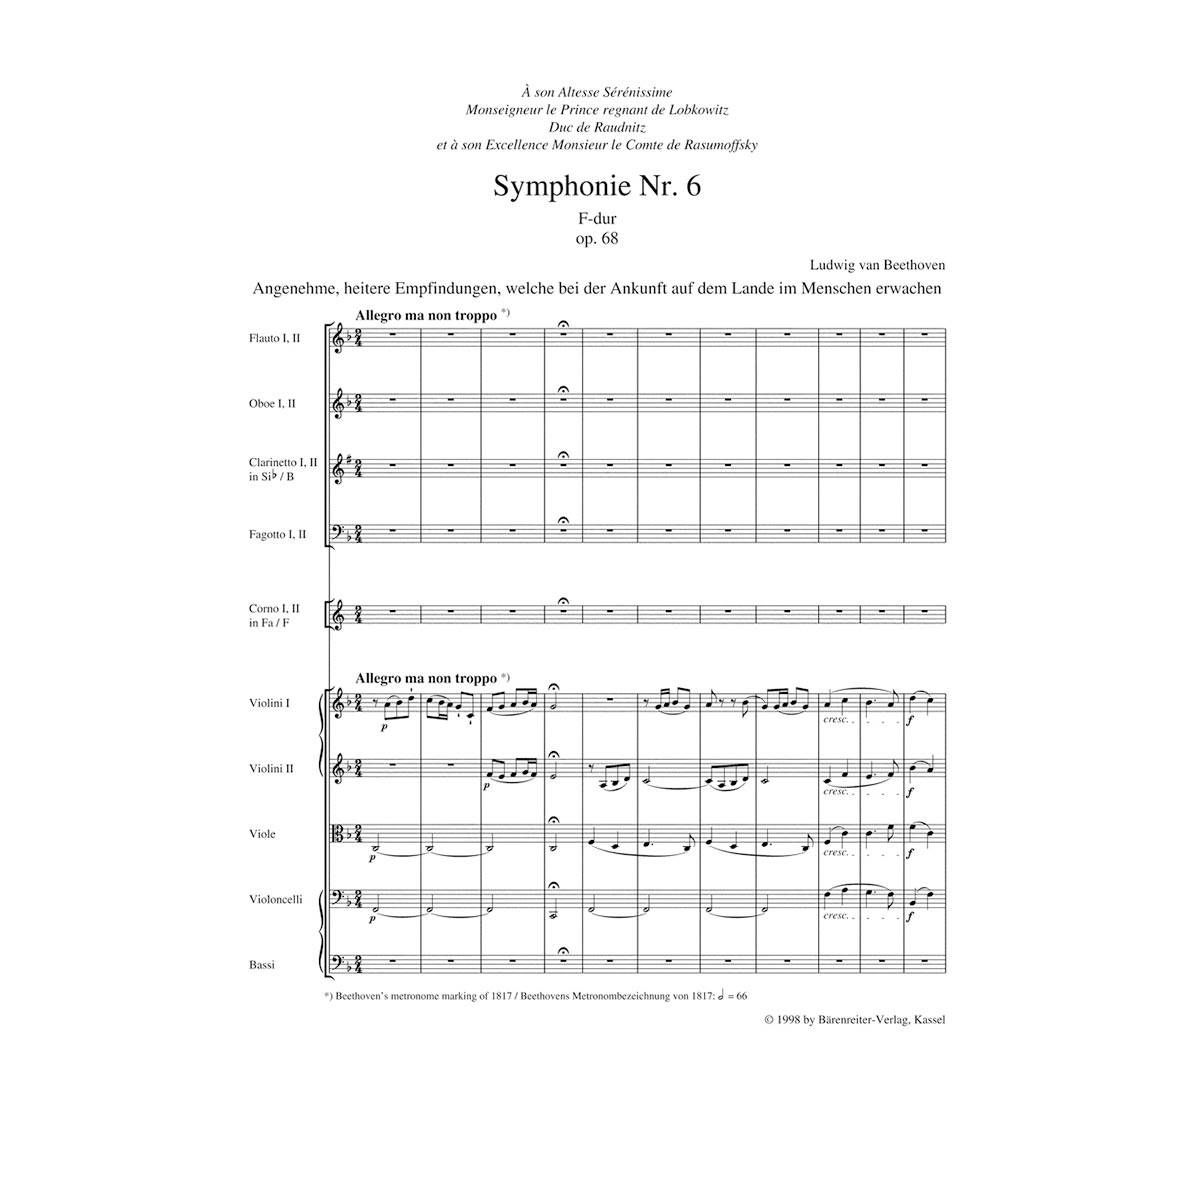 Beethoven - Symphony Nr.6 in F Major Op.68''Pastorale'' [Pocket Score]